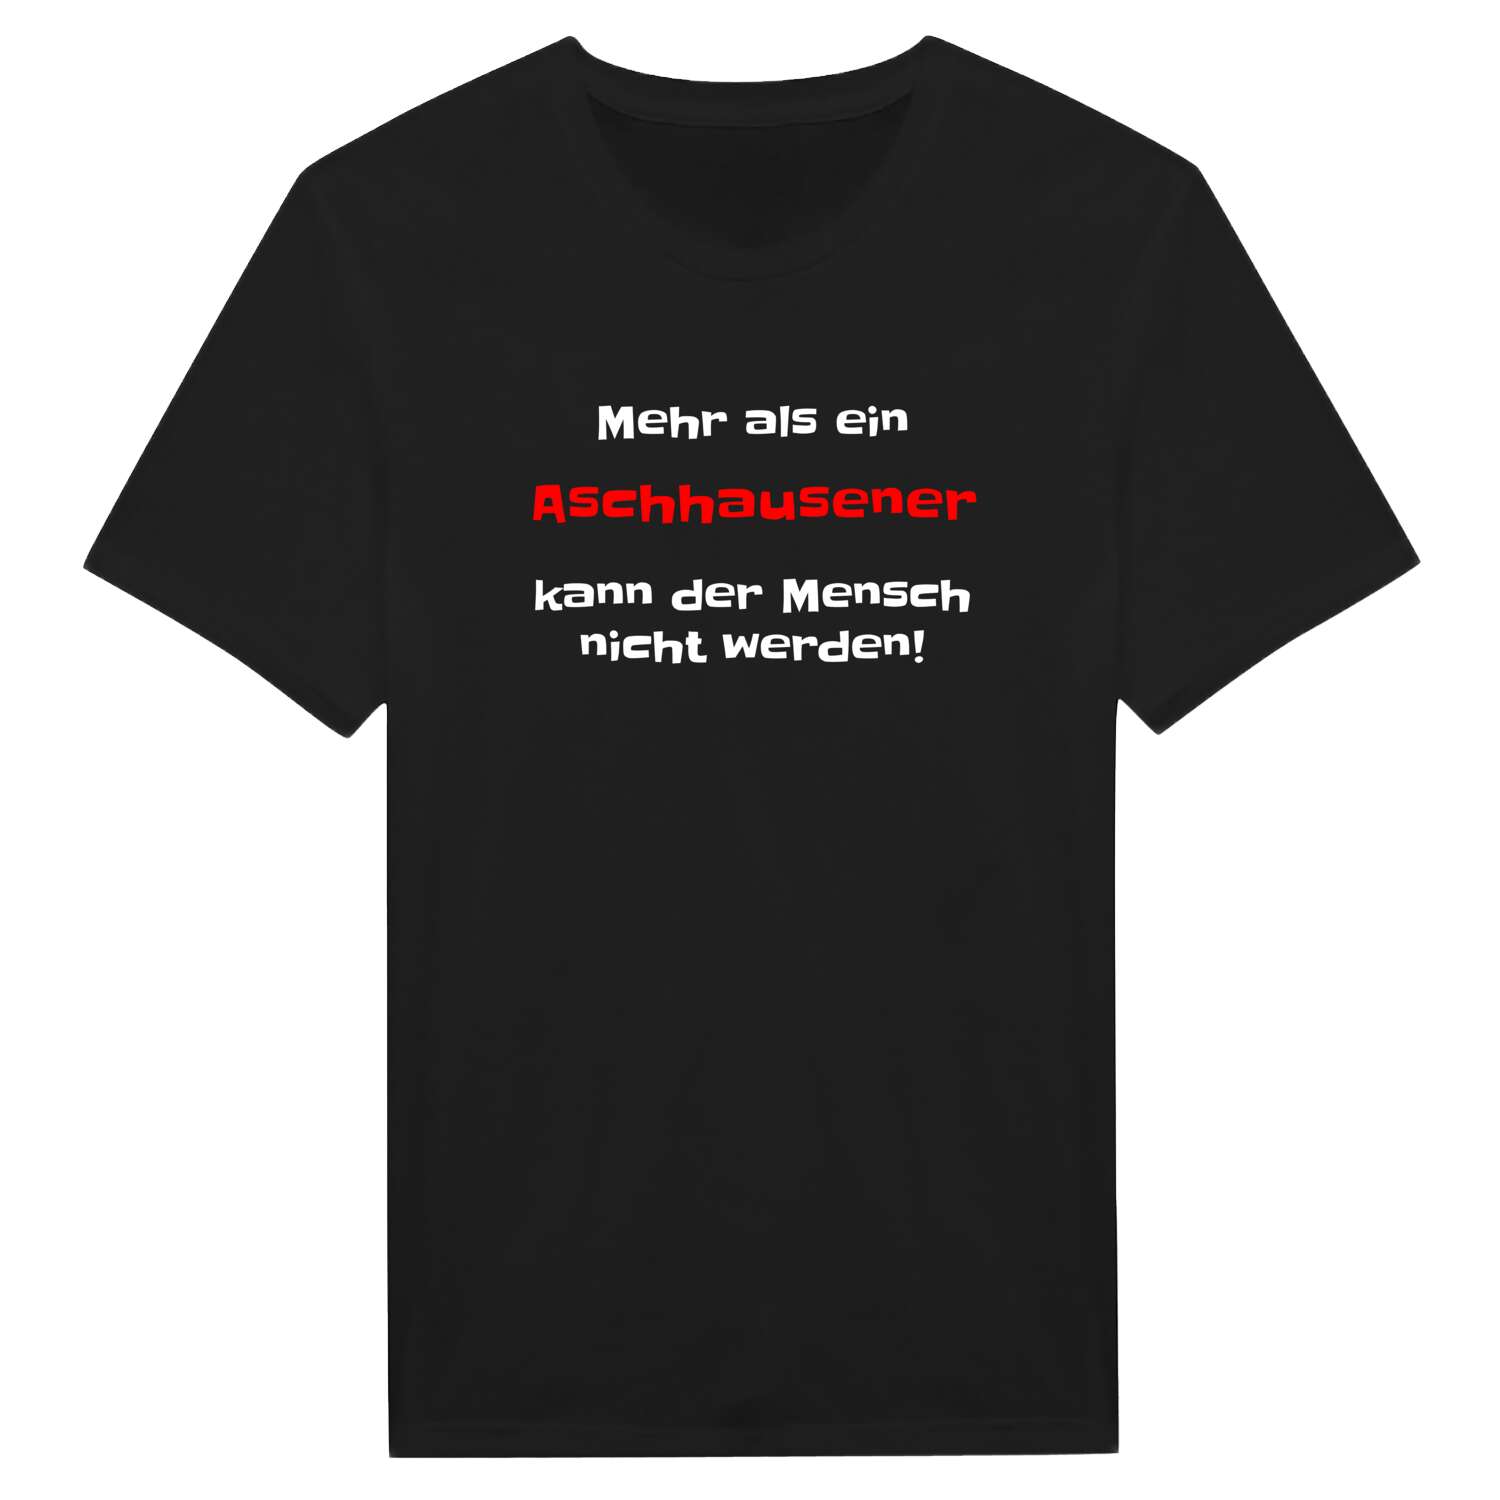 Aschhausen T-Shirt »Mehr als ein«